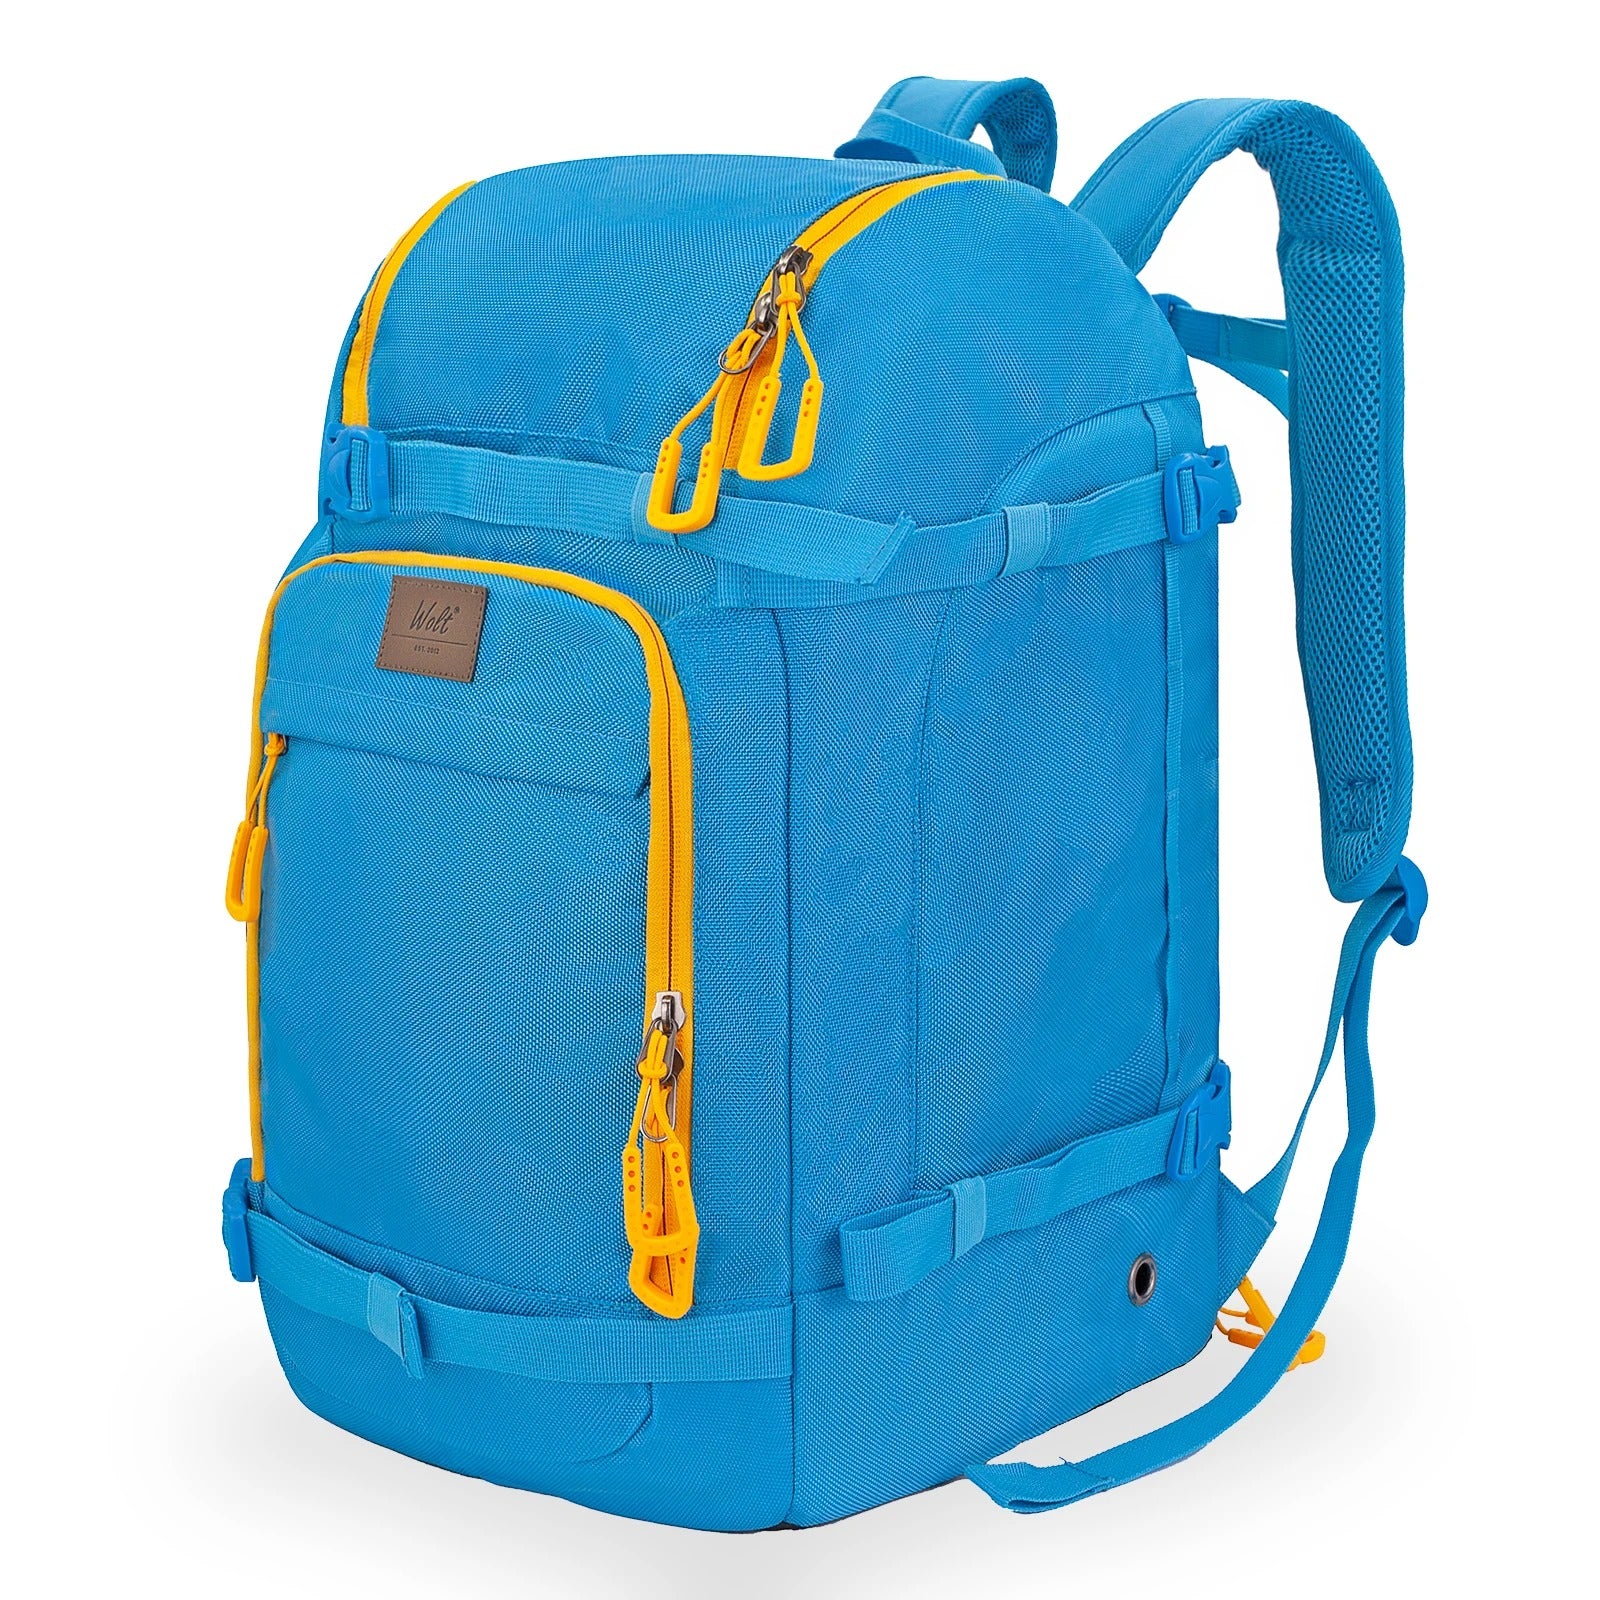 Ski Strap Backpack - Blue